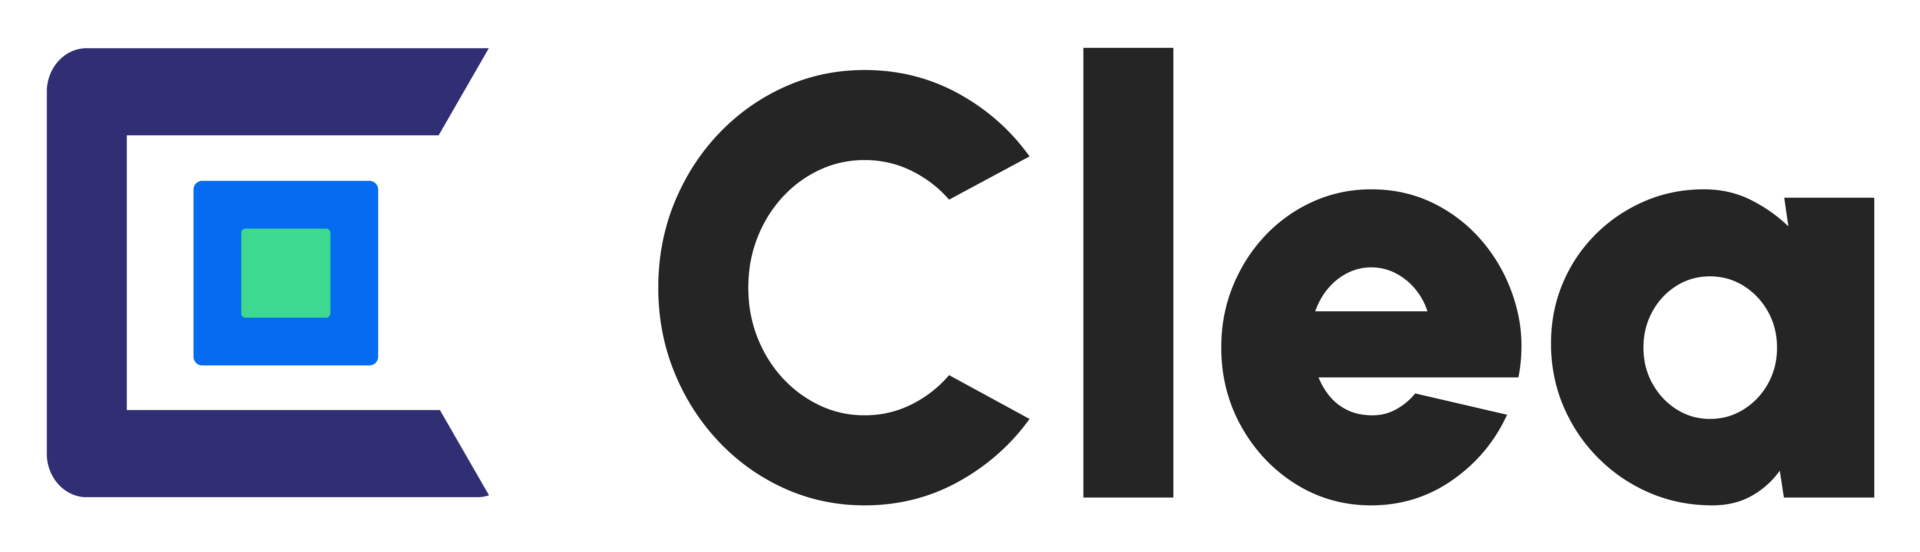 Clea logo positive